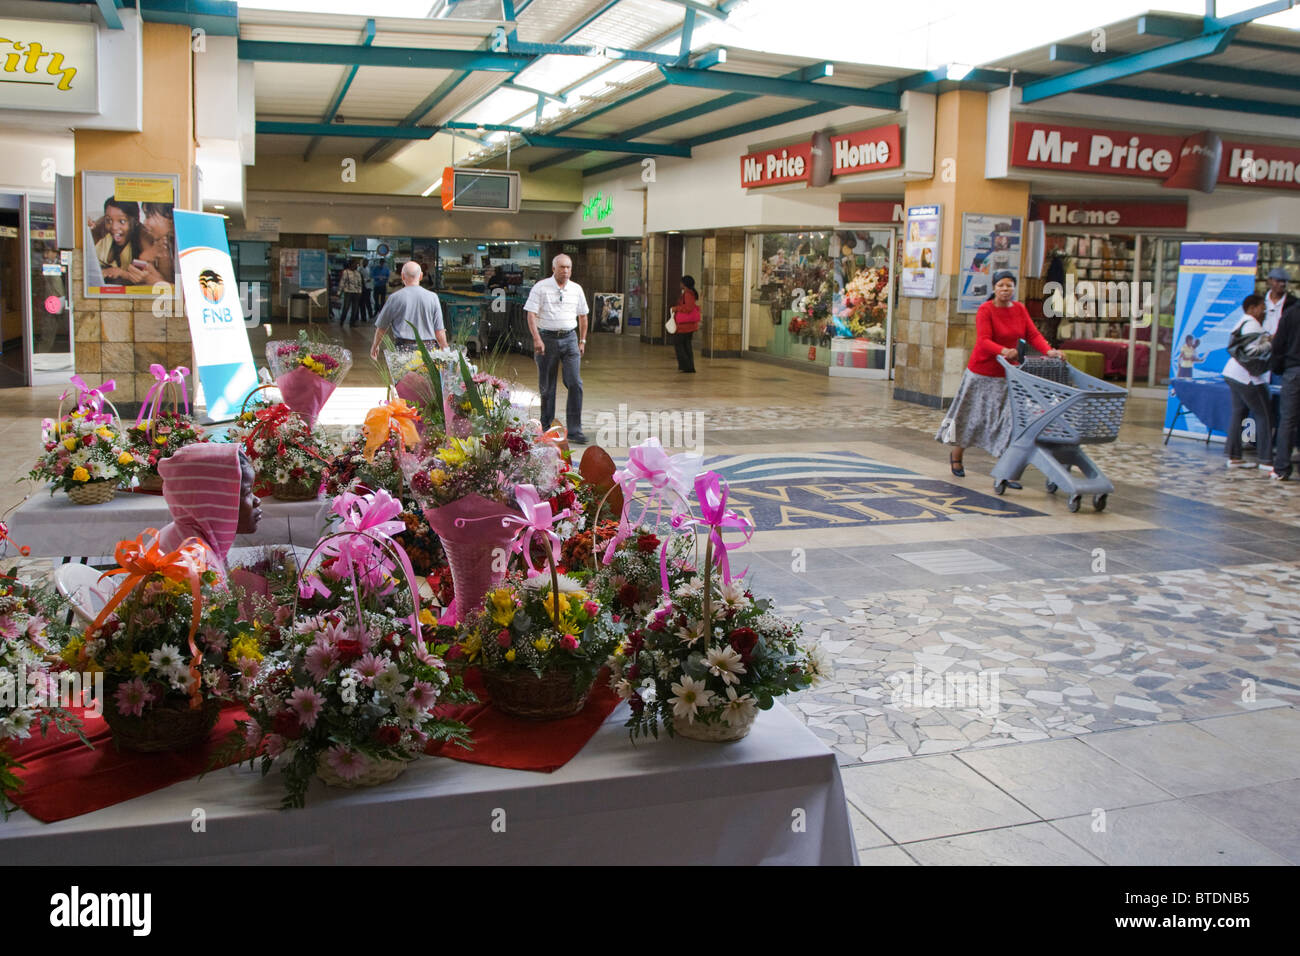 Visiteurs de la Riverwalk Shopping Mall avec des bouquets de fleurs sur l'affichage en premier plan Banque D'Images